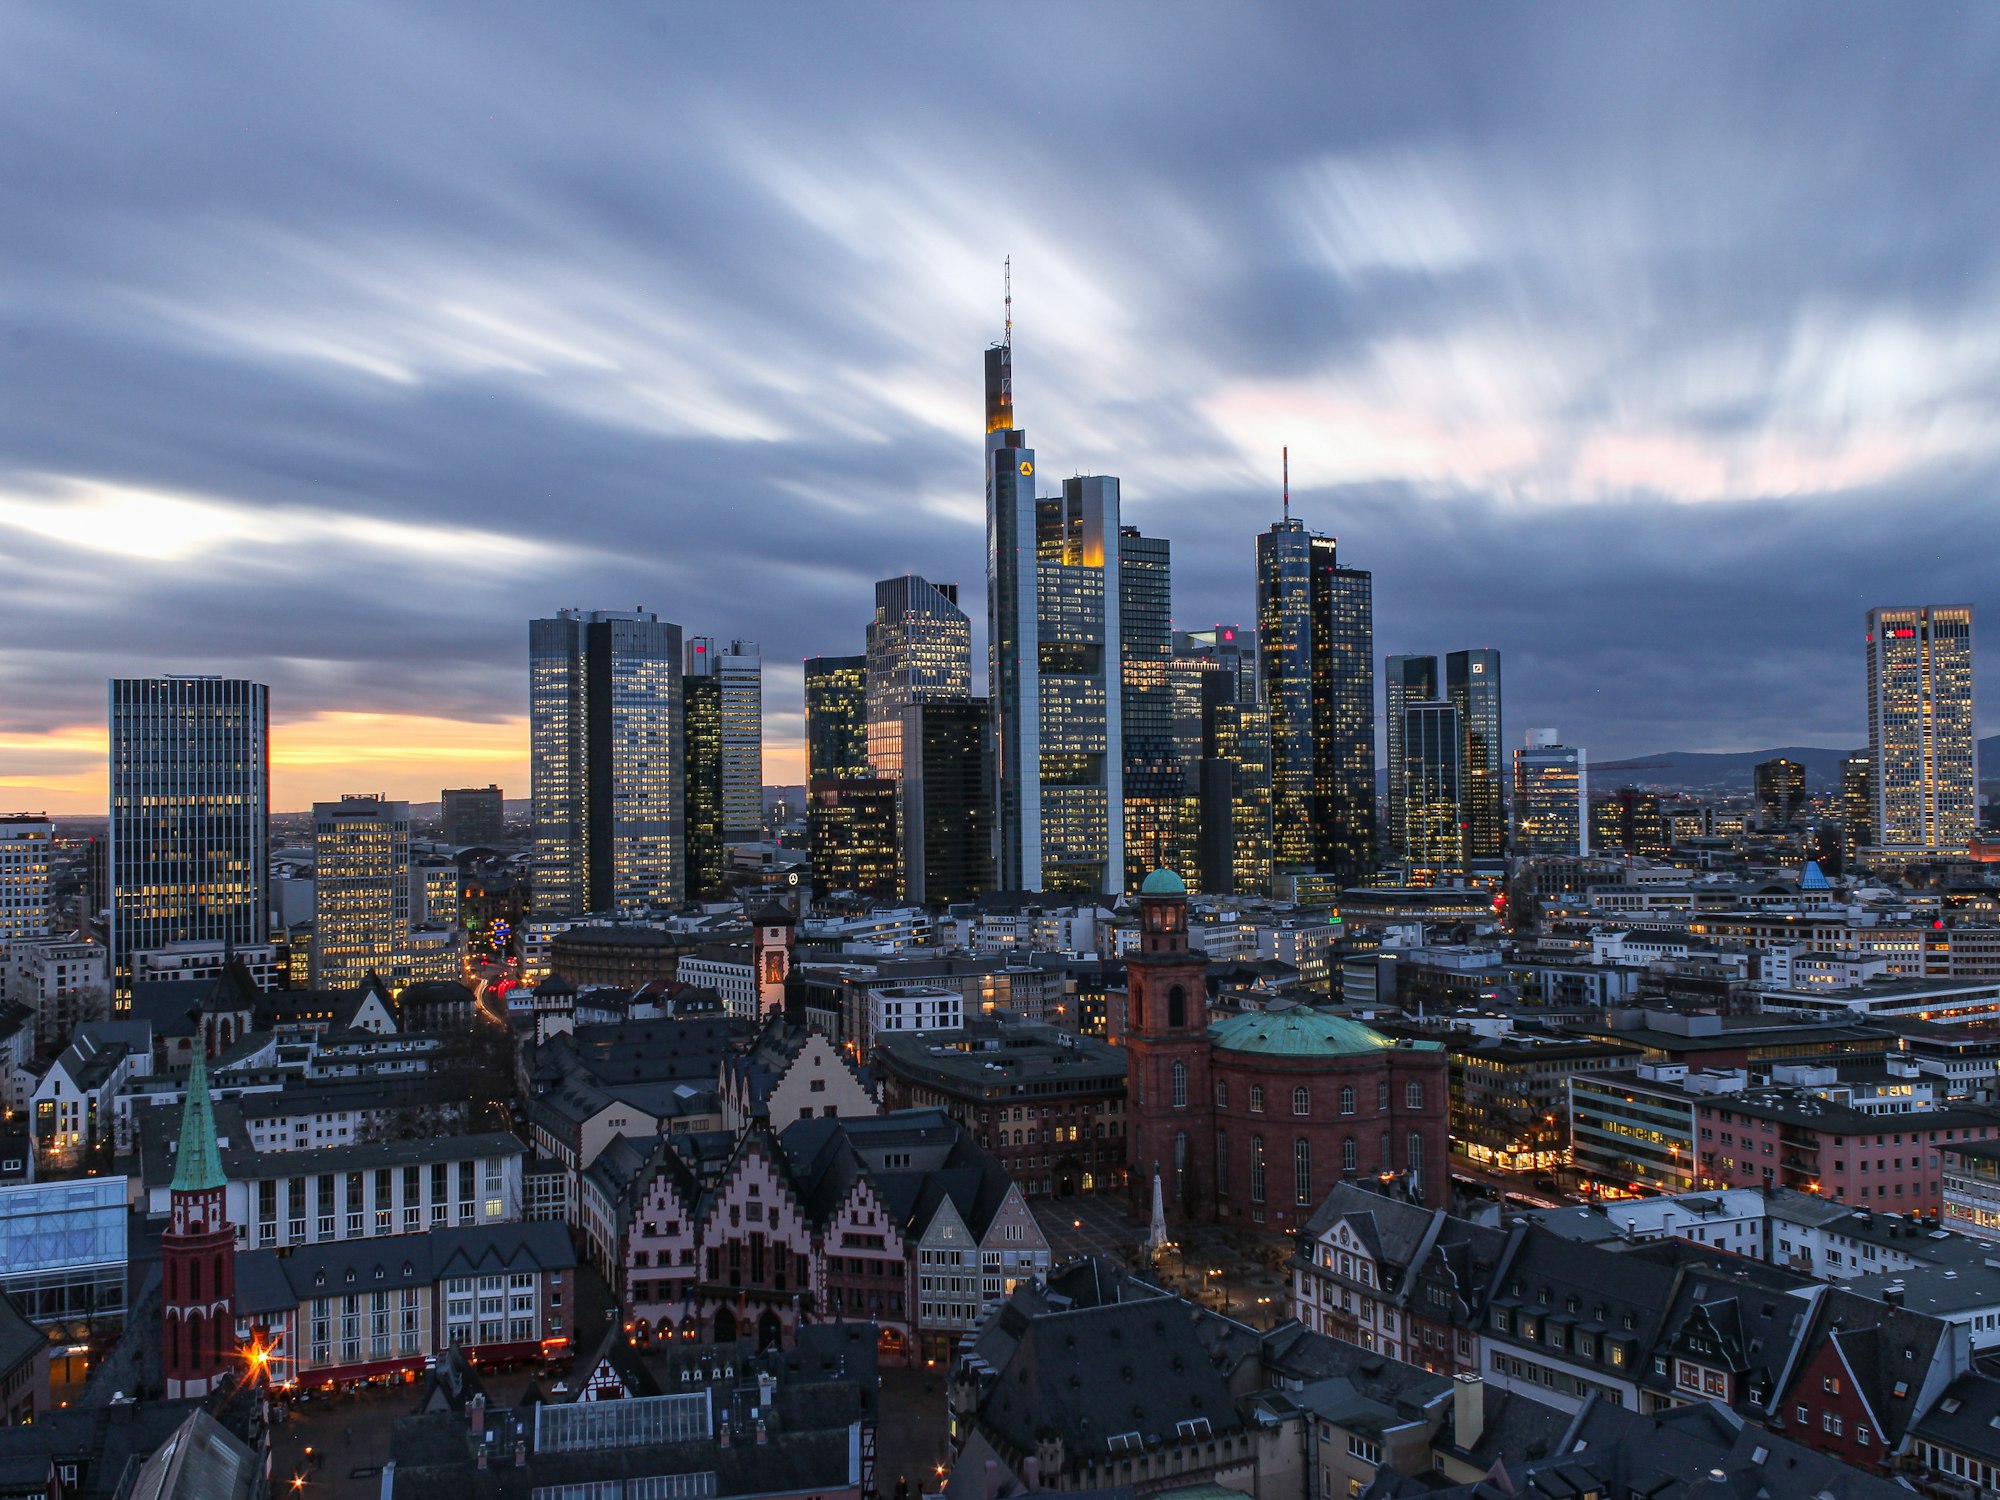 Frankfurt am Main: Schämt sich keiner?